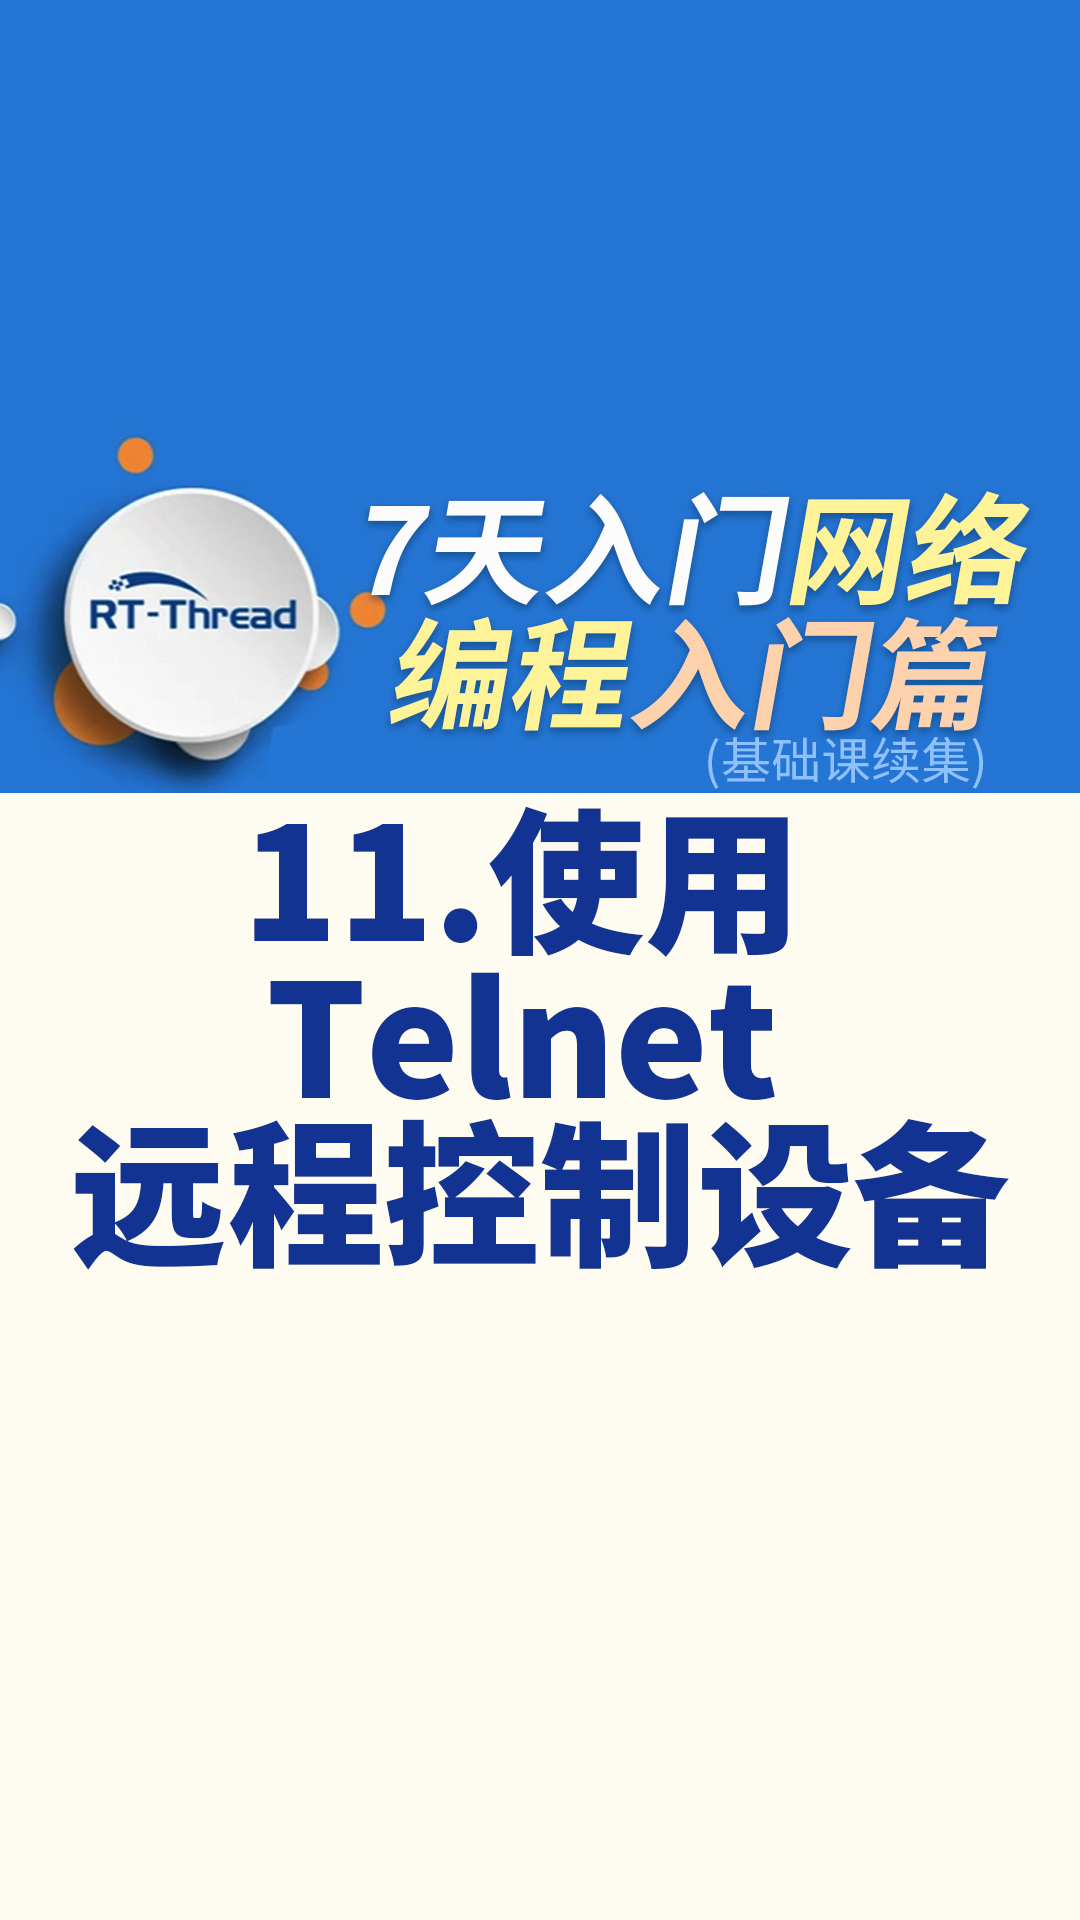 7天入門網絡編程 - 11.使用 Telnet 遠程控制設備    #網絡編程 